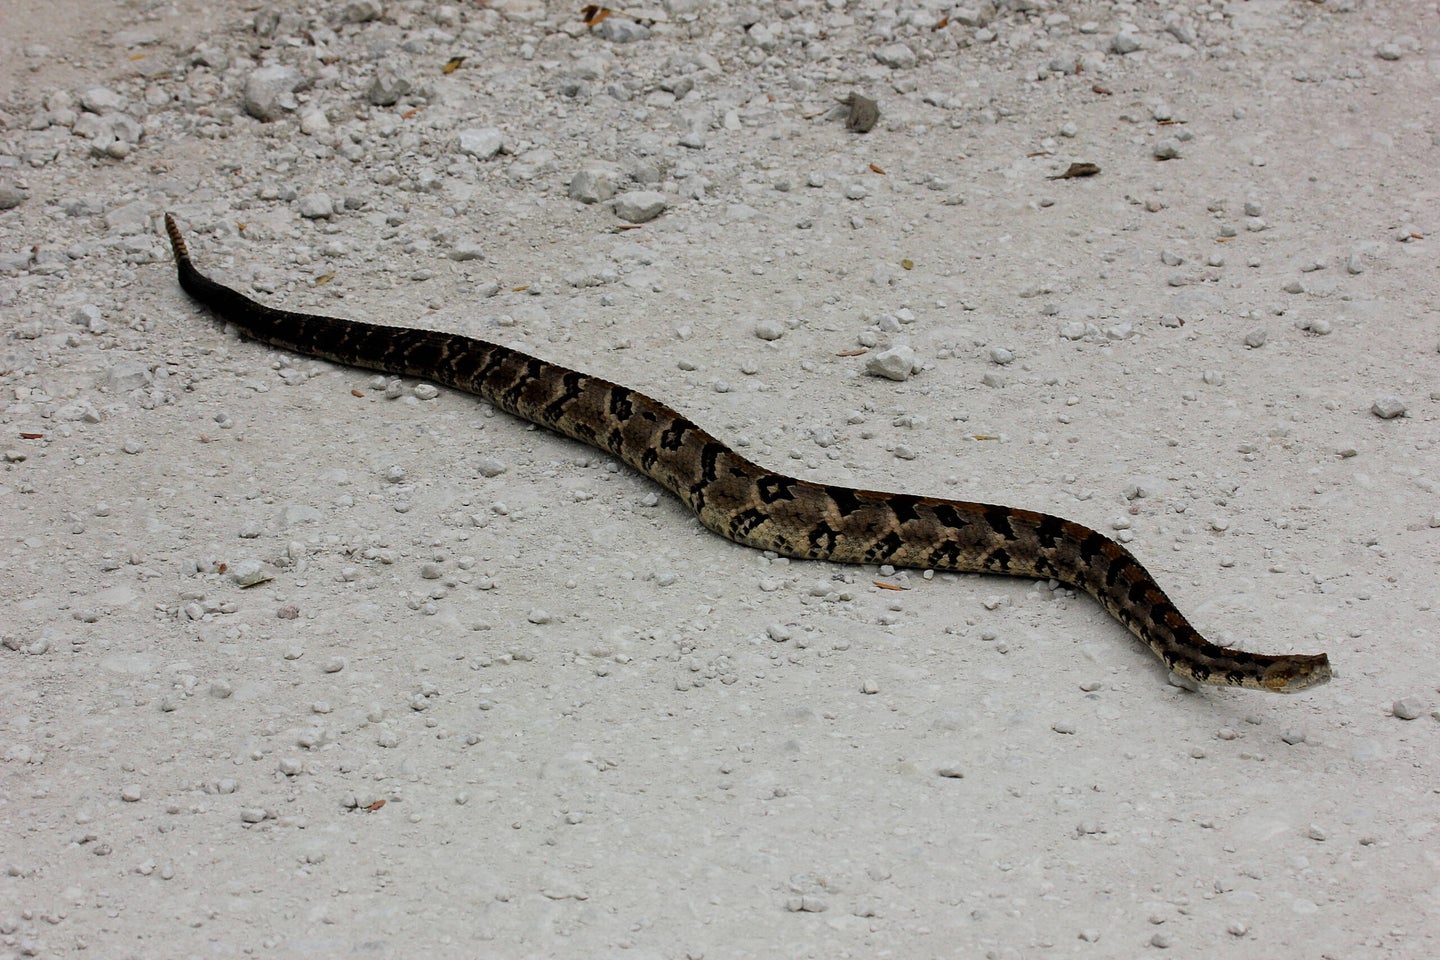 Venomous snakes migrate seasonally in southern Illinois.